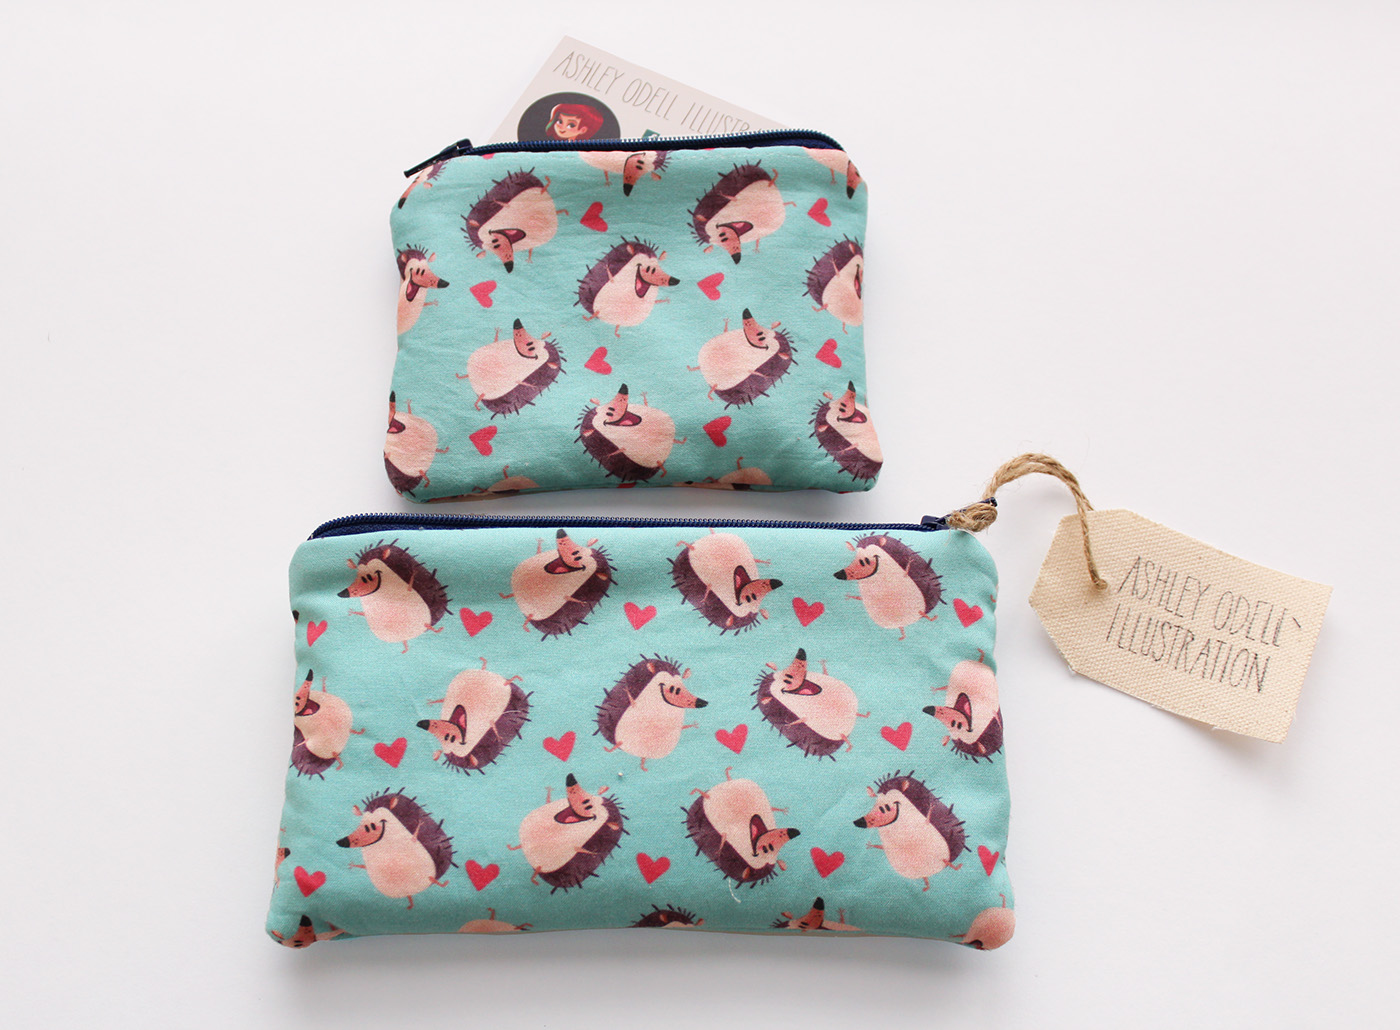 Hedgehog hedgie pattern ILLUSTRATION  pillows zipper purse pouch